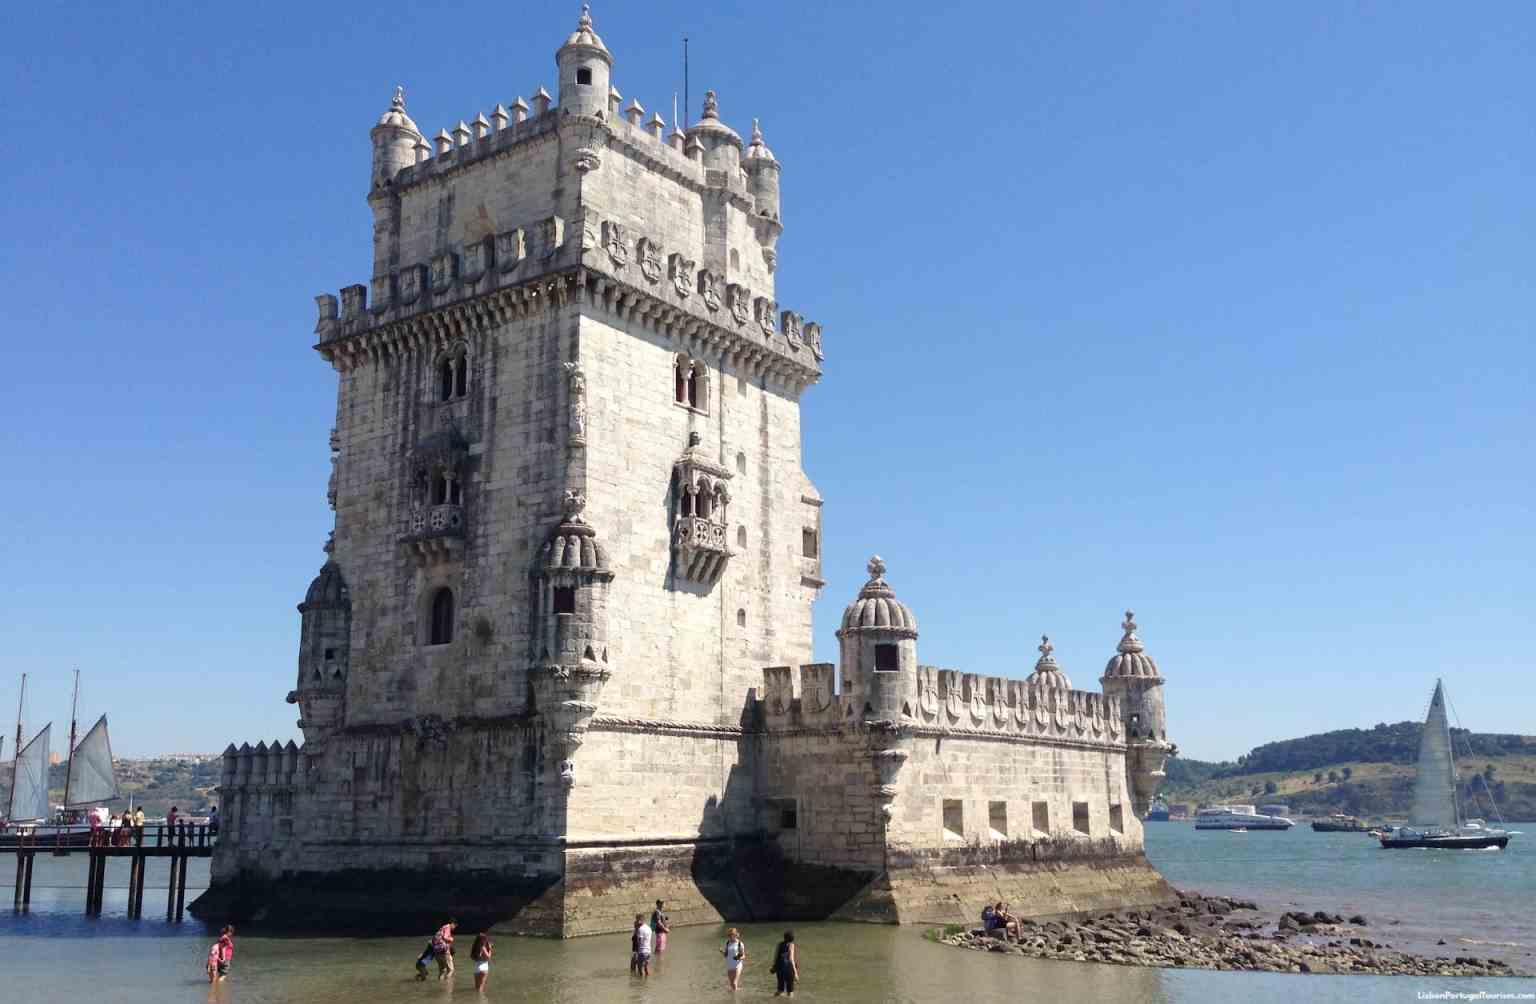  عکس کشور پرتغال